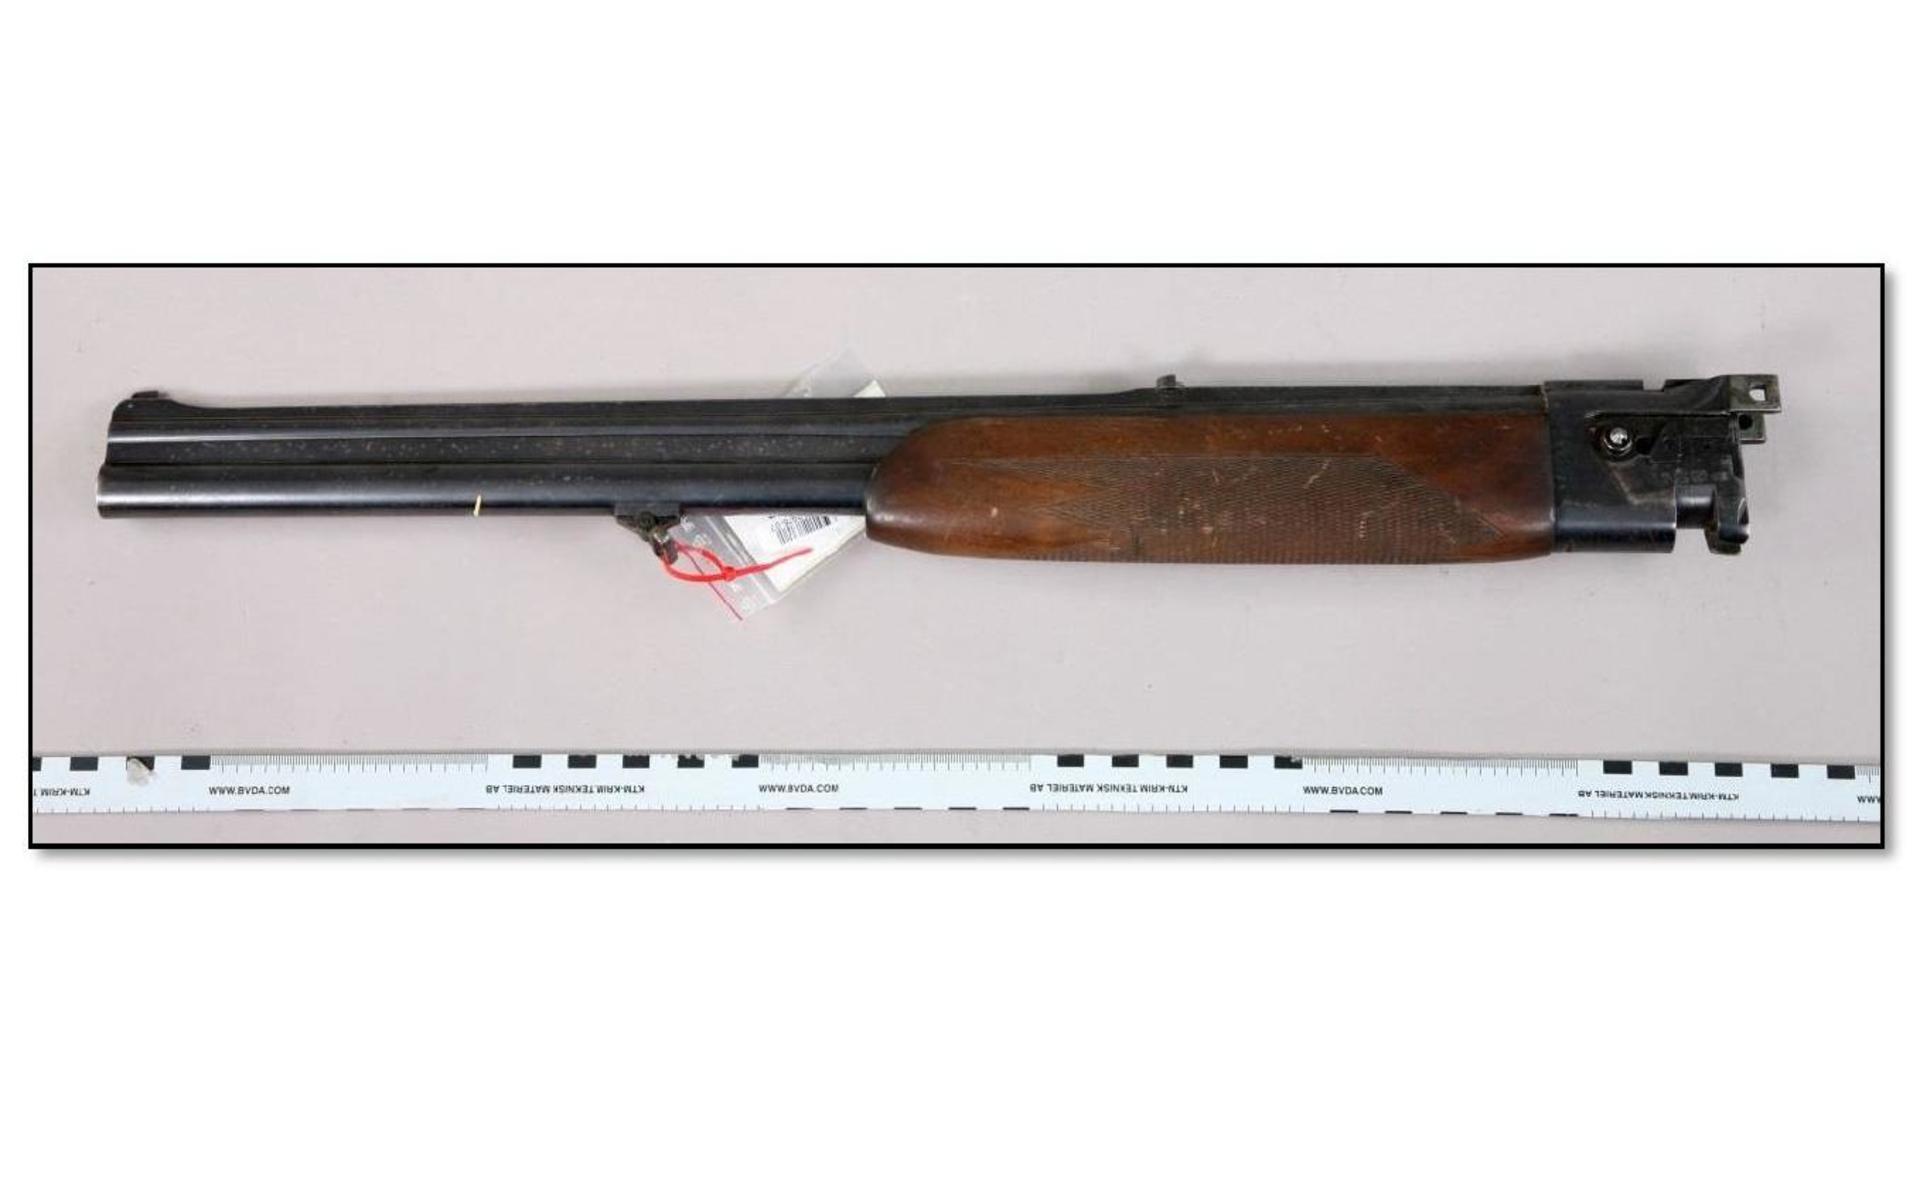 Ett pipset i kaliber 12-70 till ett hagelgevär avbockmodell. Pipsetet omfattas av vapenlagen och jämställs med skjutvapen. Bild: Polisen